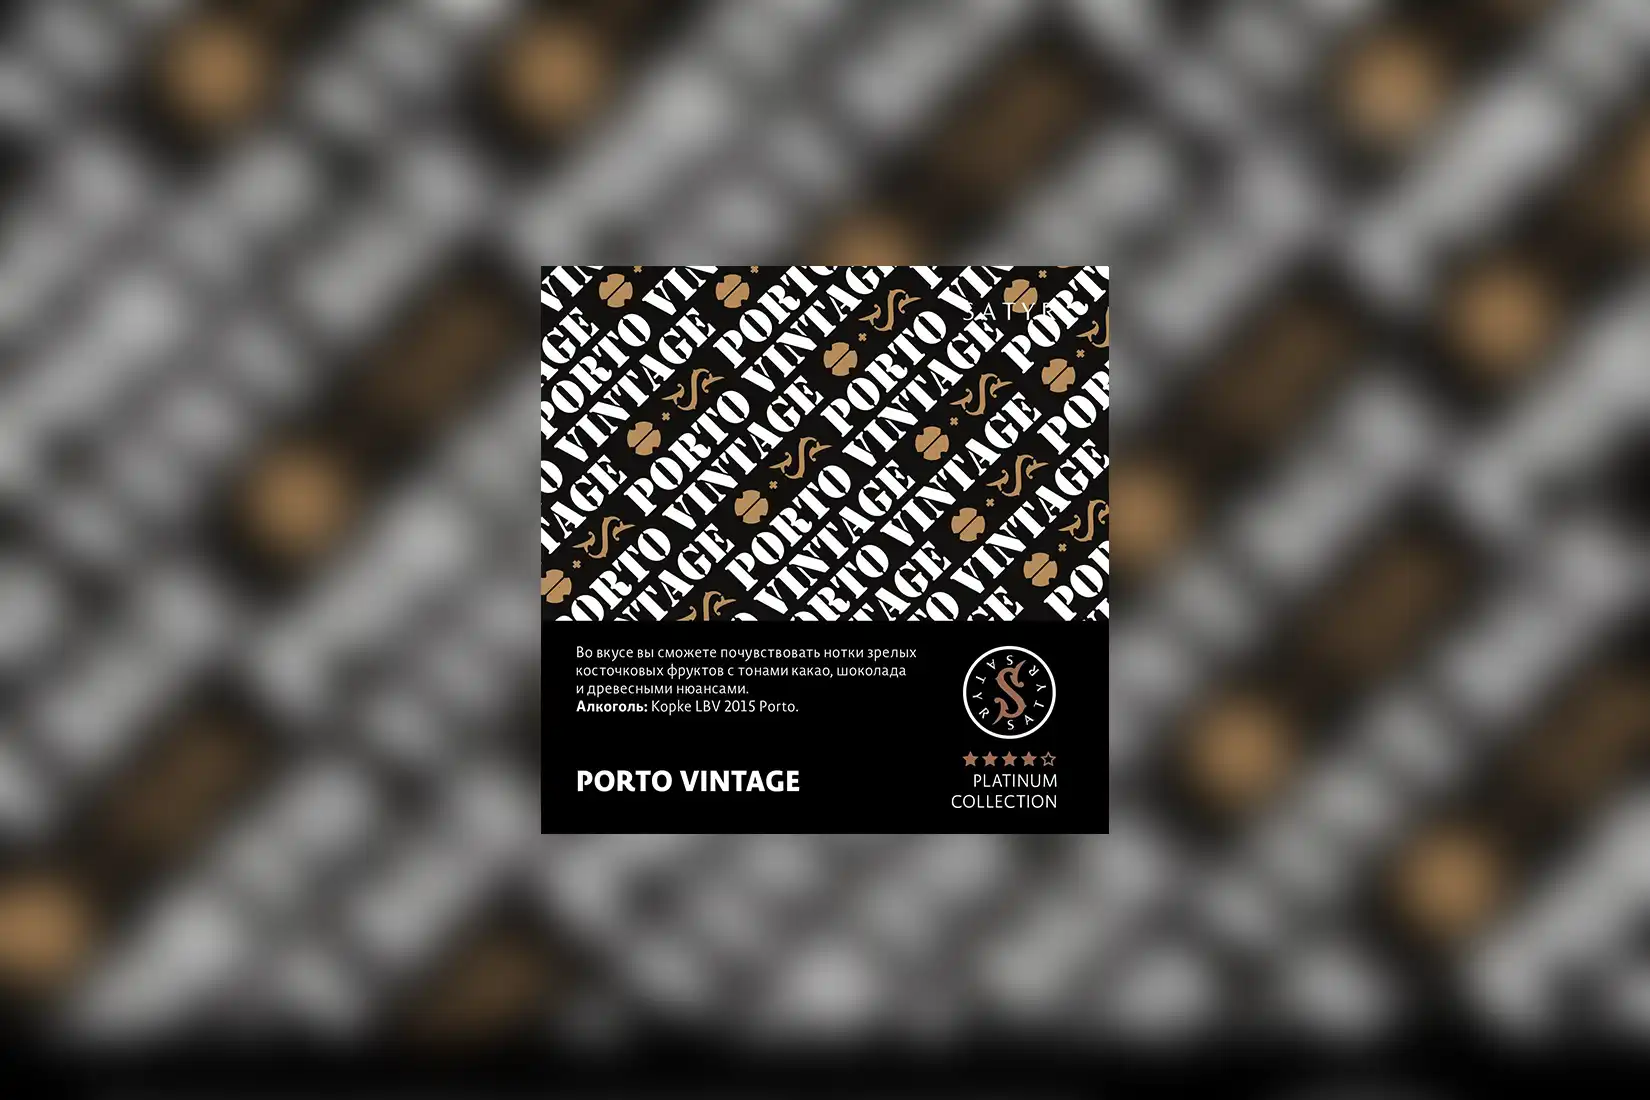 Табак для кальяна Satyr Platinum Collection — PORTO VINTAGE (Kopke LBV 2015 Porto). Описание и миксы